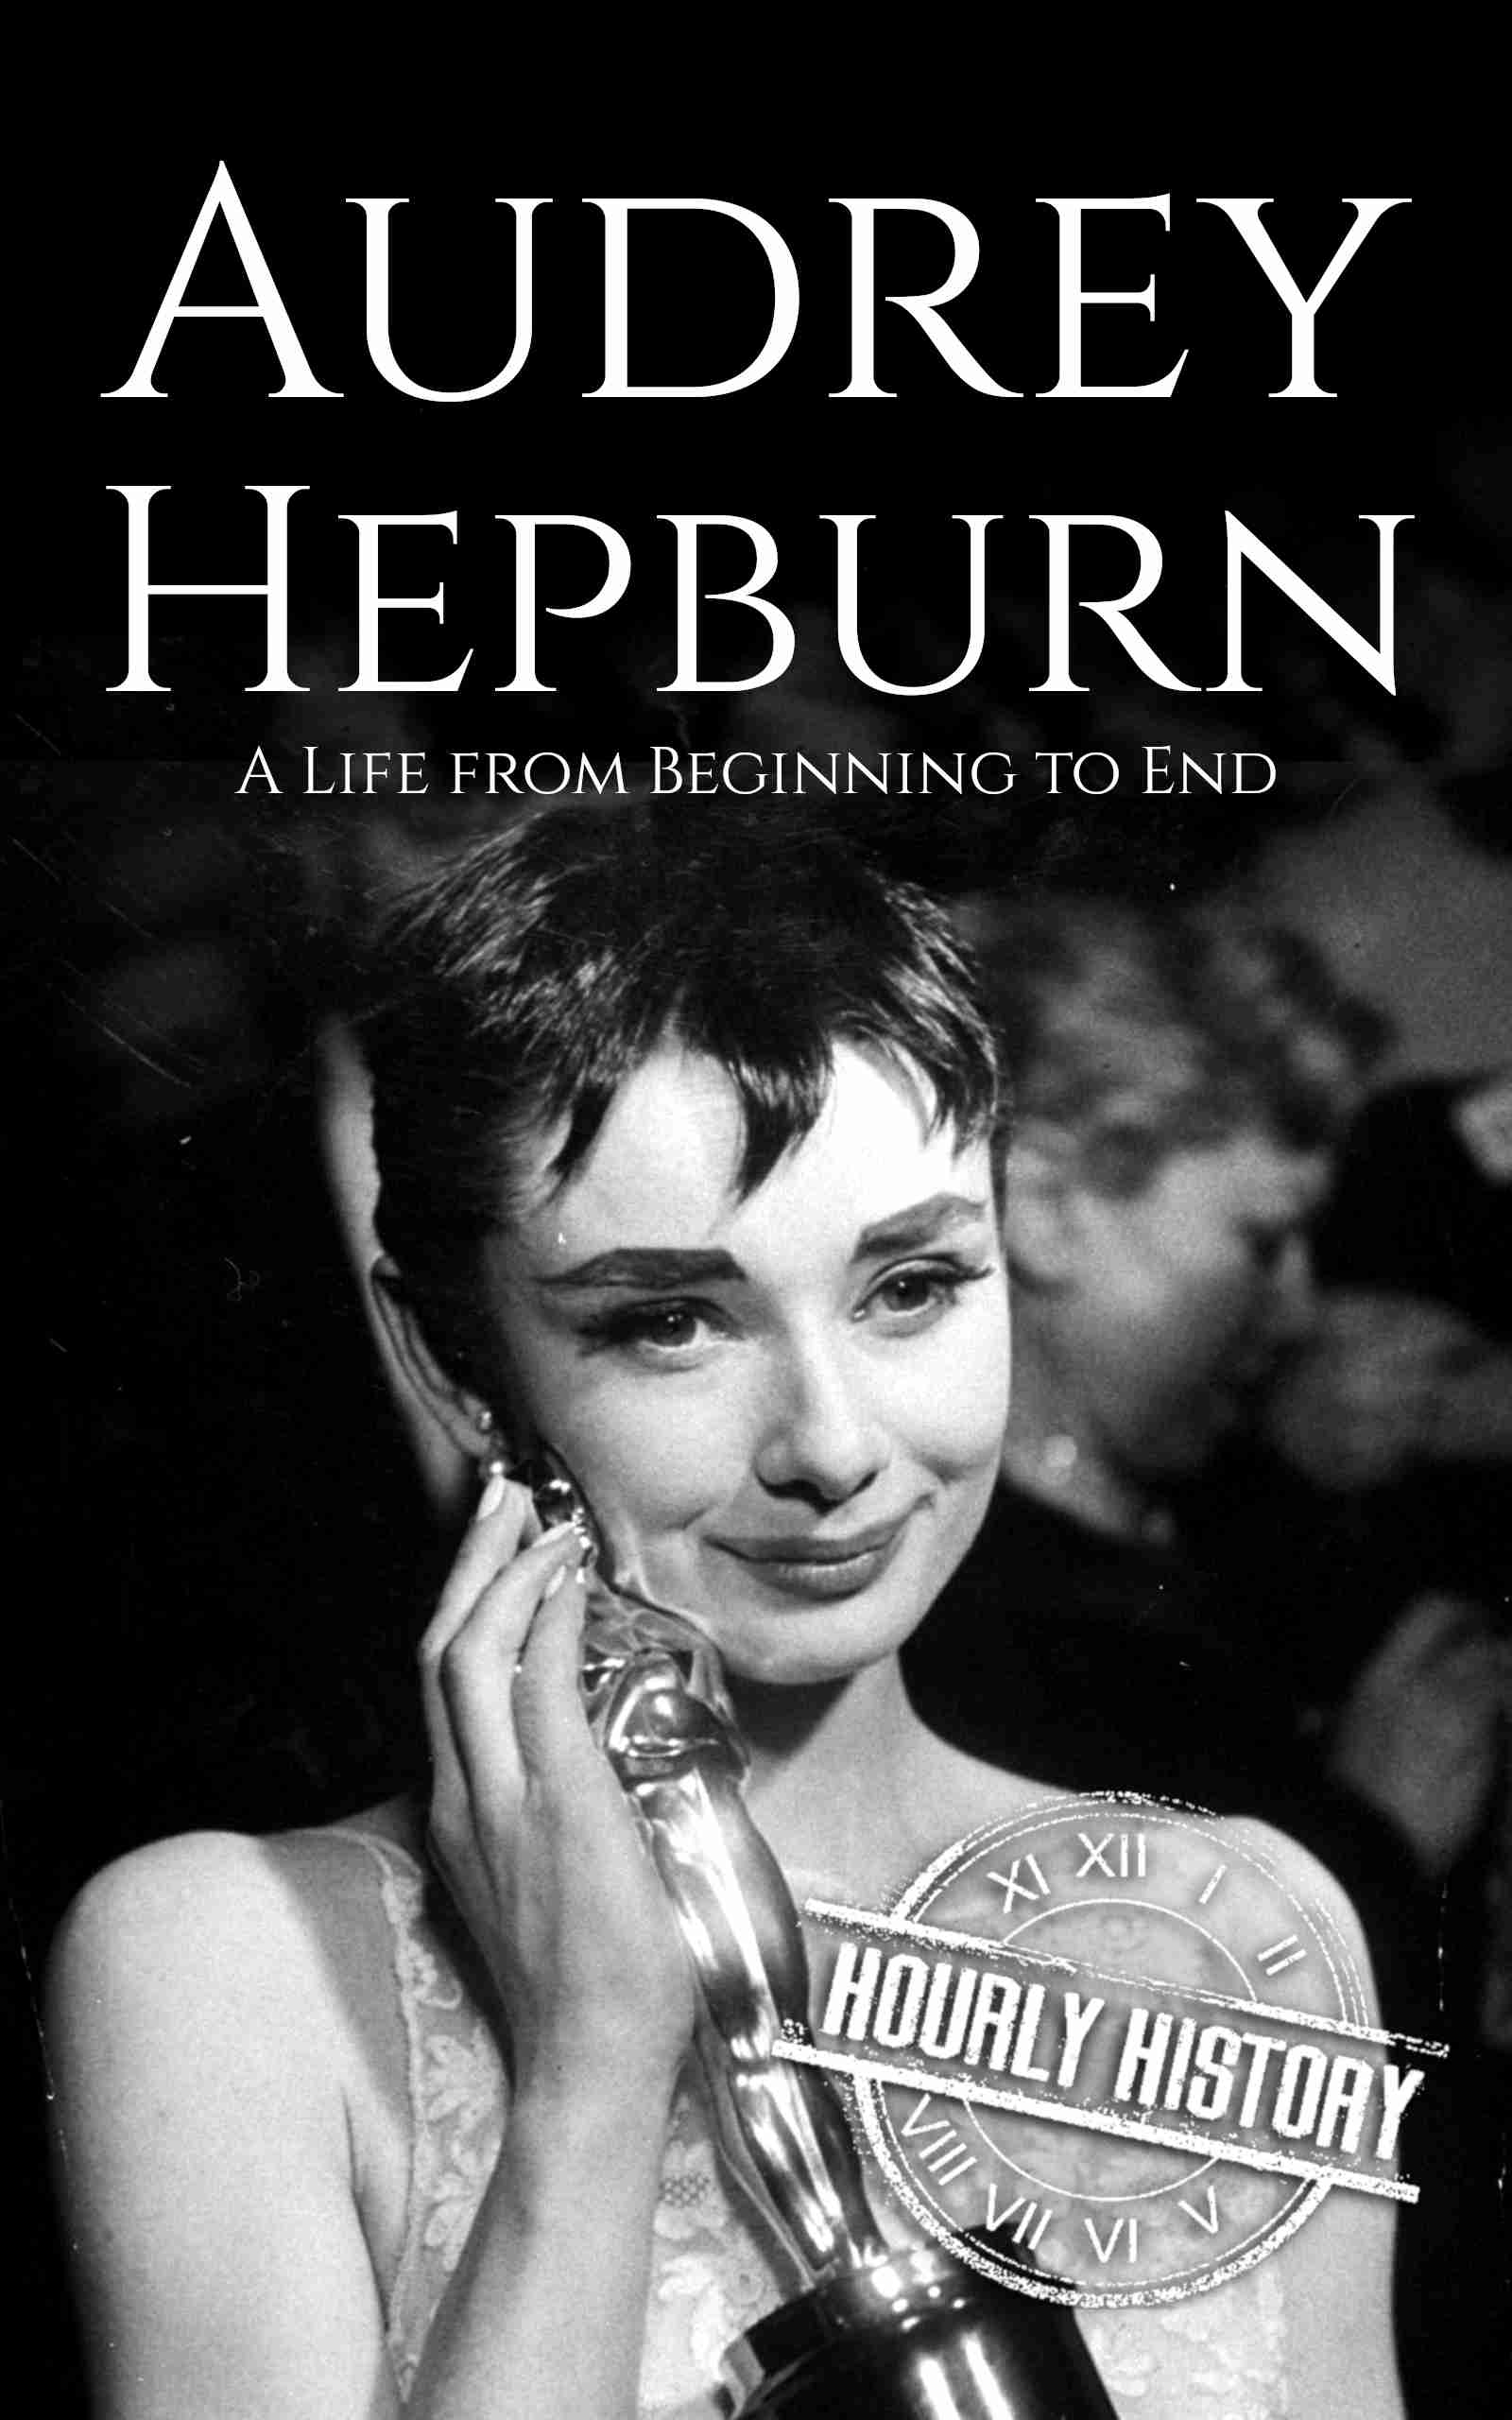 best audrey hepburn biography book